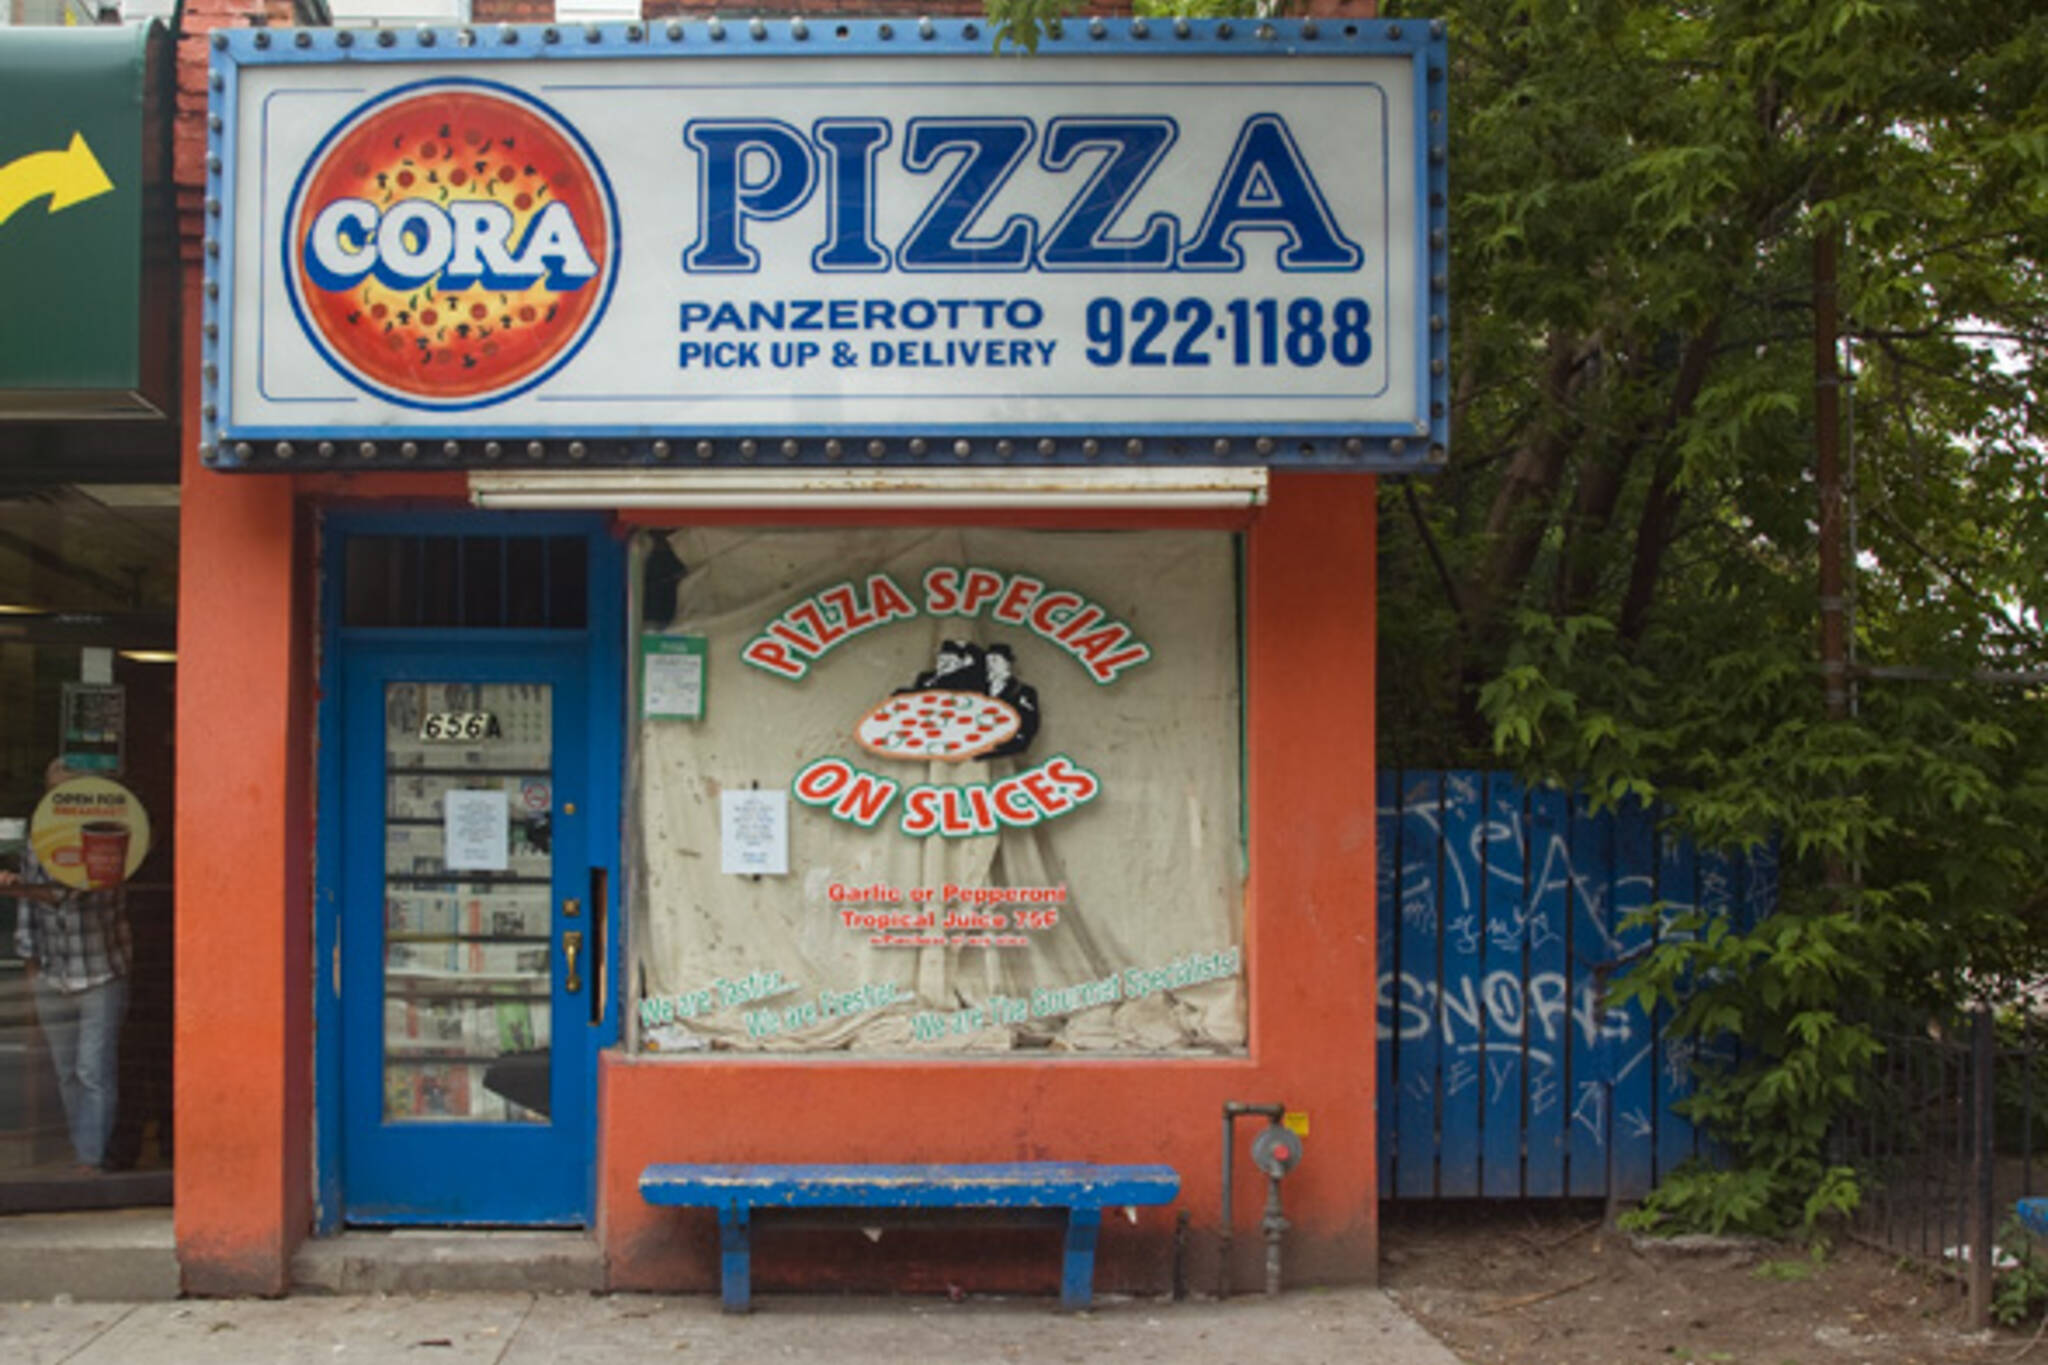 Cora Pizza closed